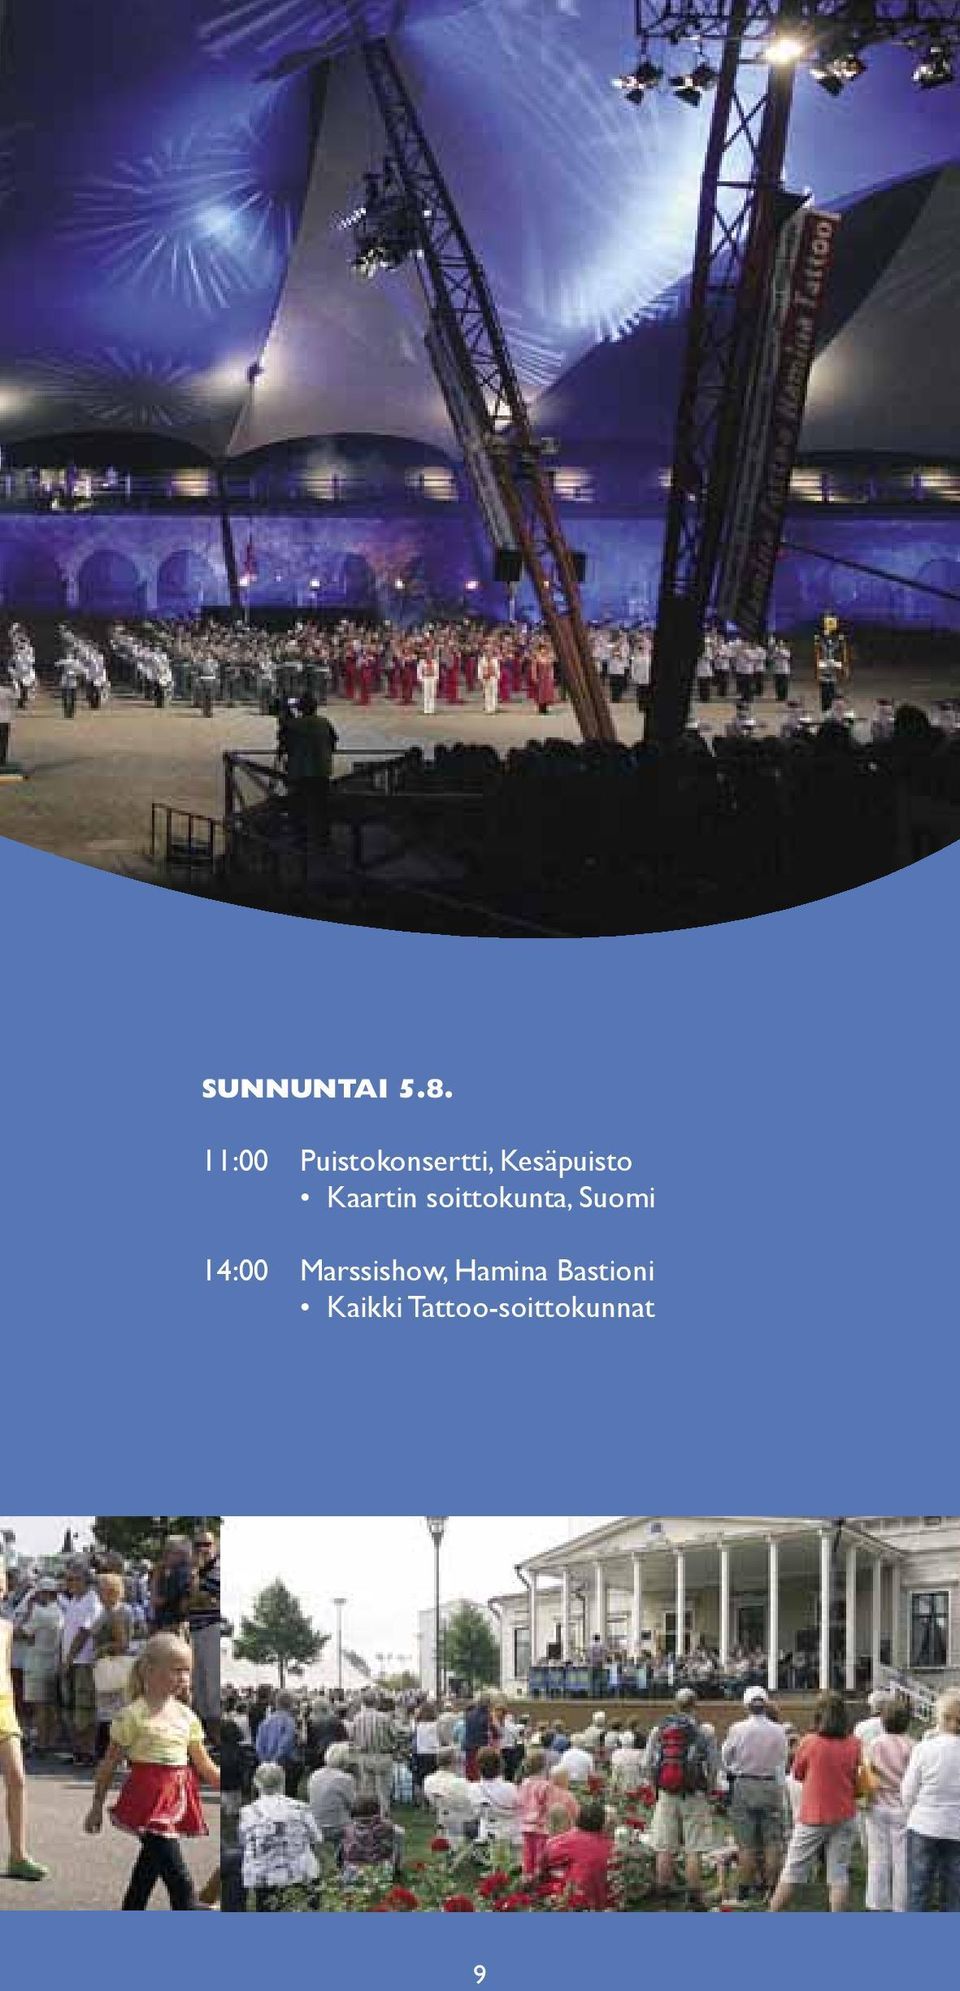 Kaartin soittokunta, Suomi 14:00